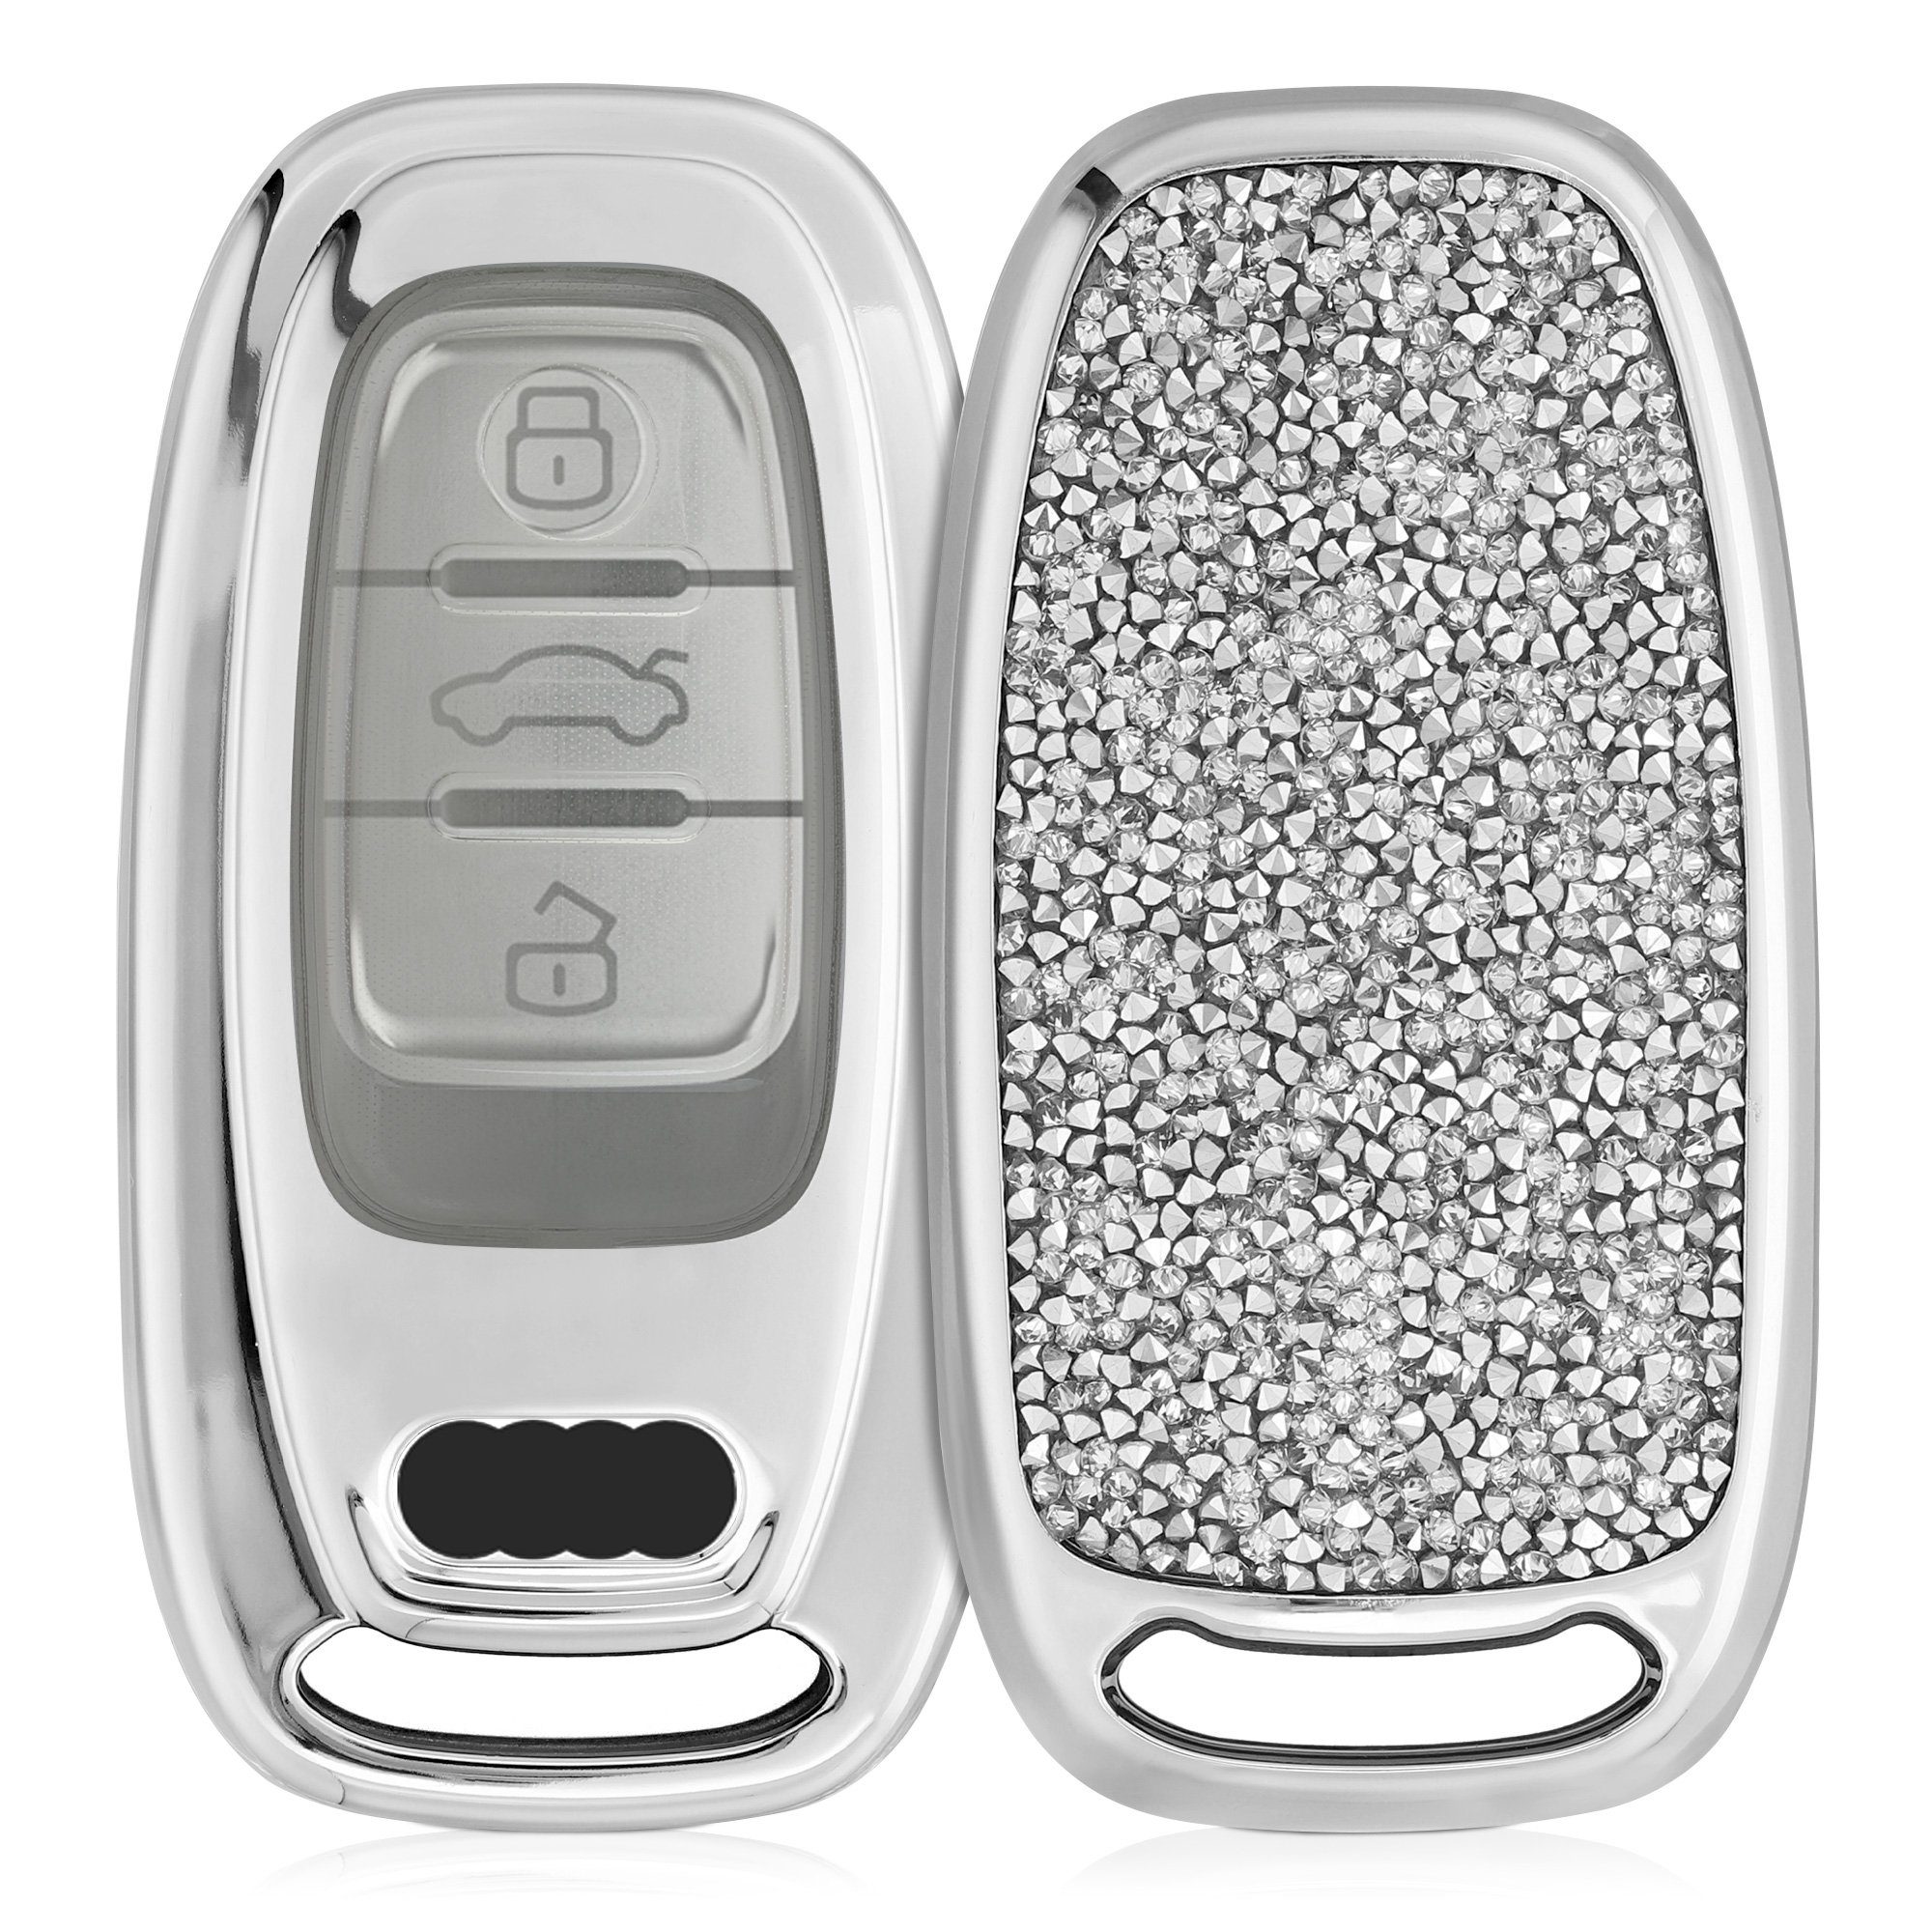 Klappschlüssel für Audi A8 - S8 - 3 Tasten - keyless - Aftermarket Produkt